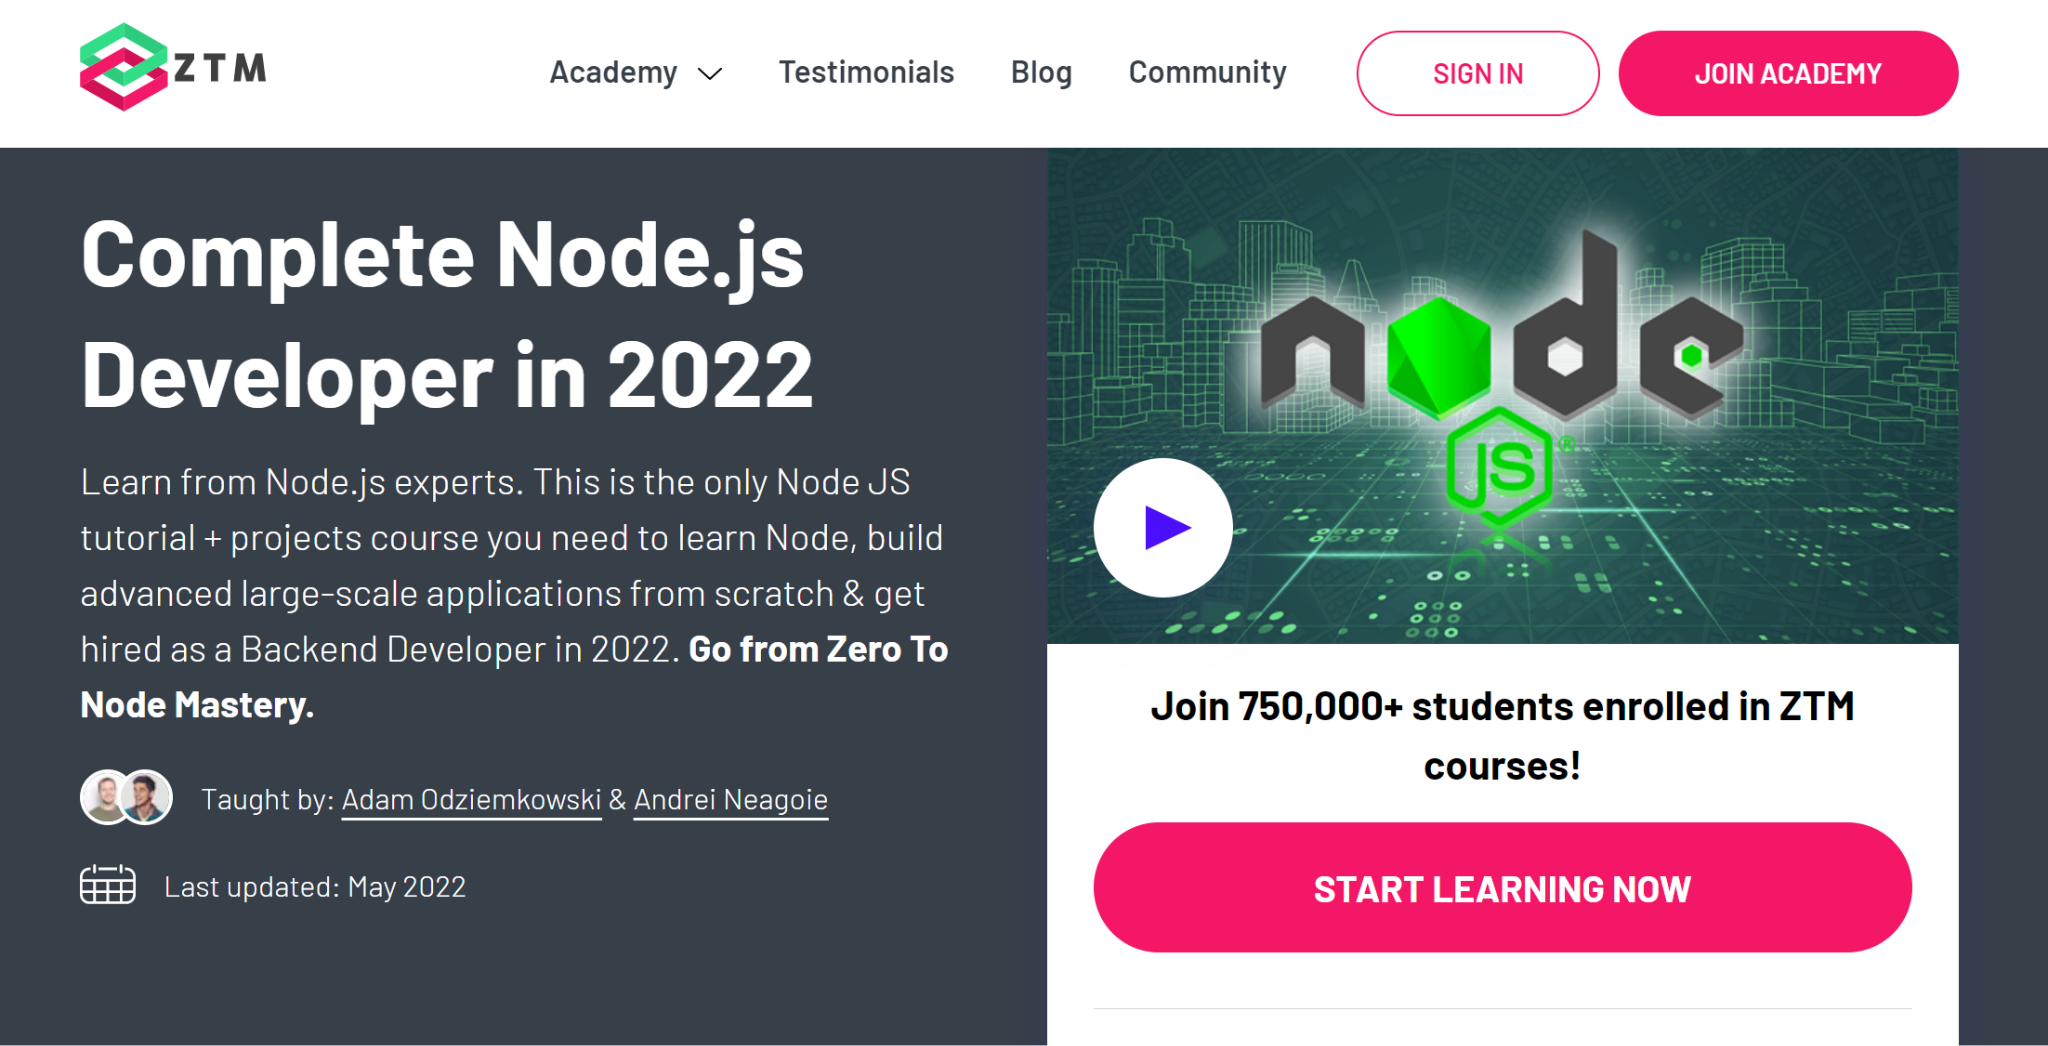 Best node js course - Complete Node.js Developer in 2022 image. 